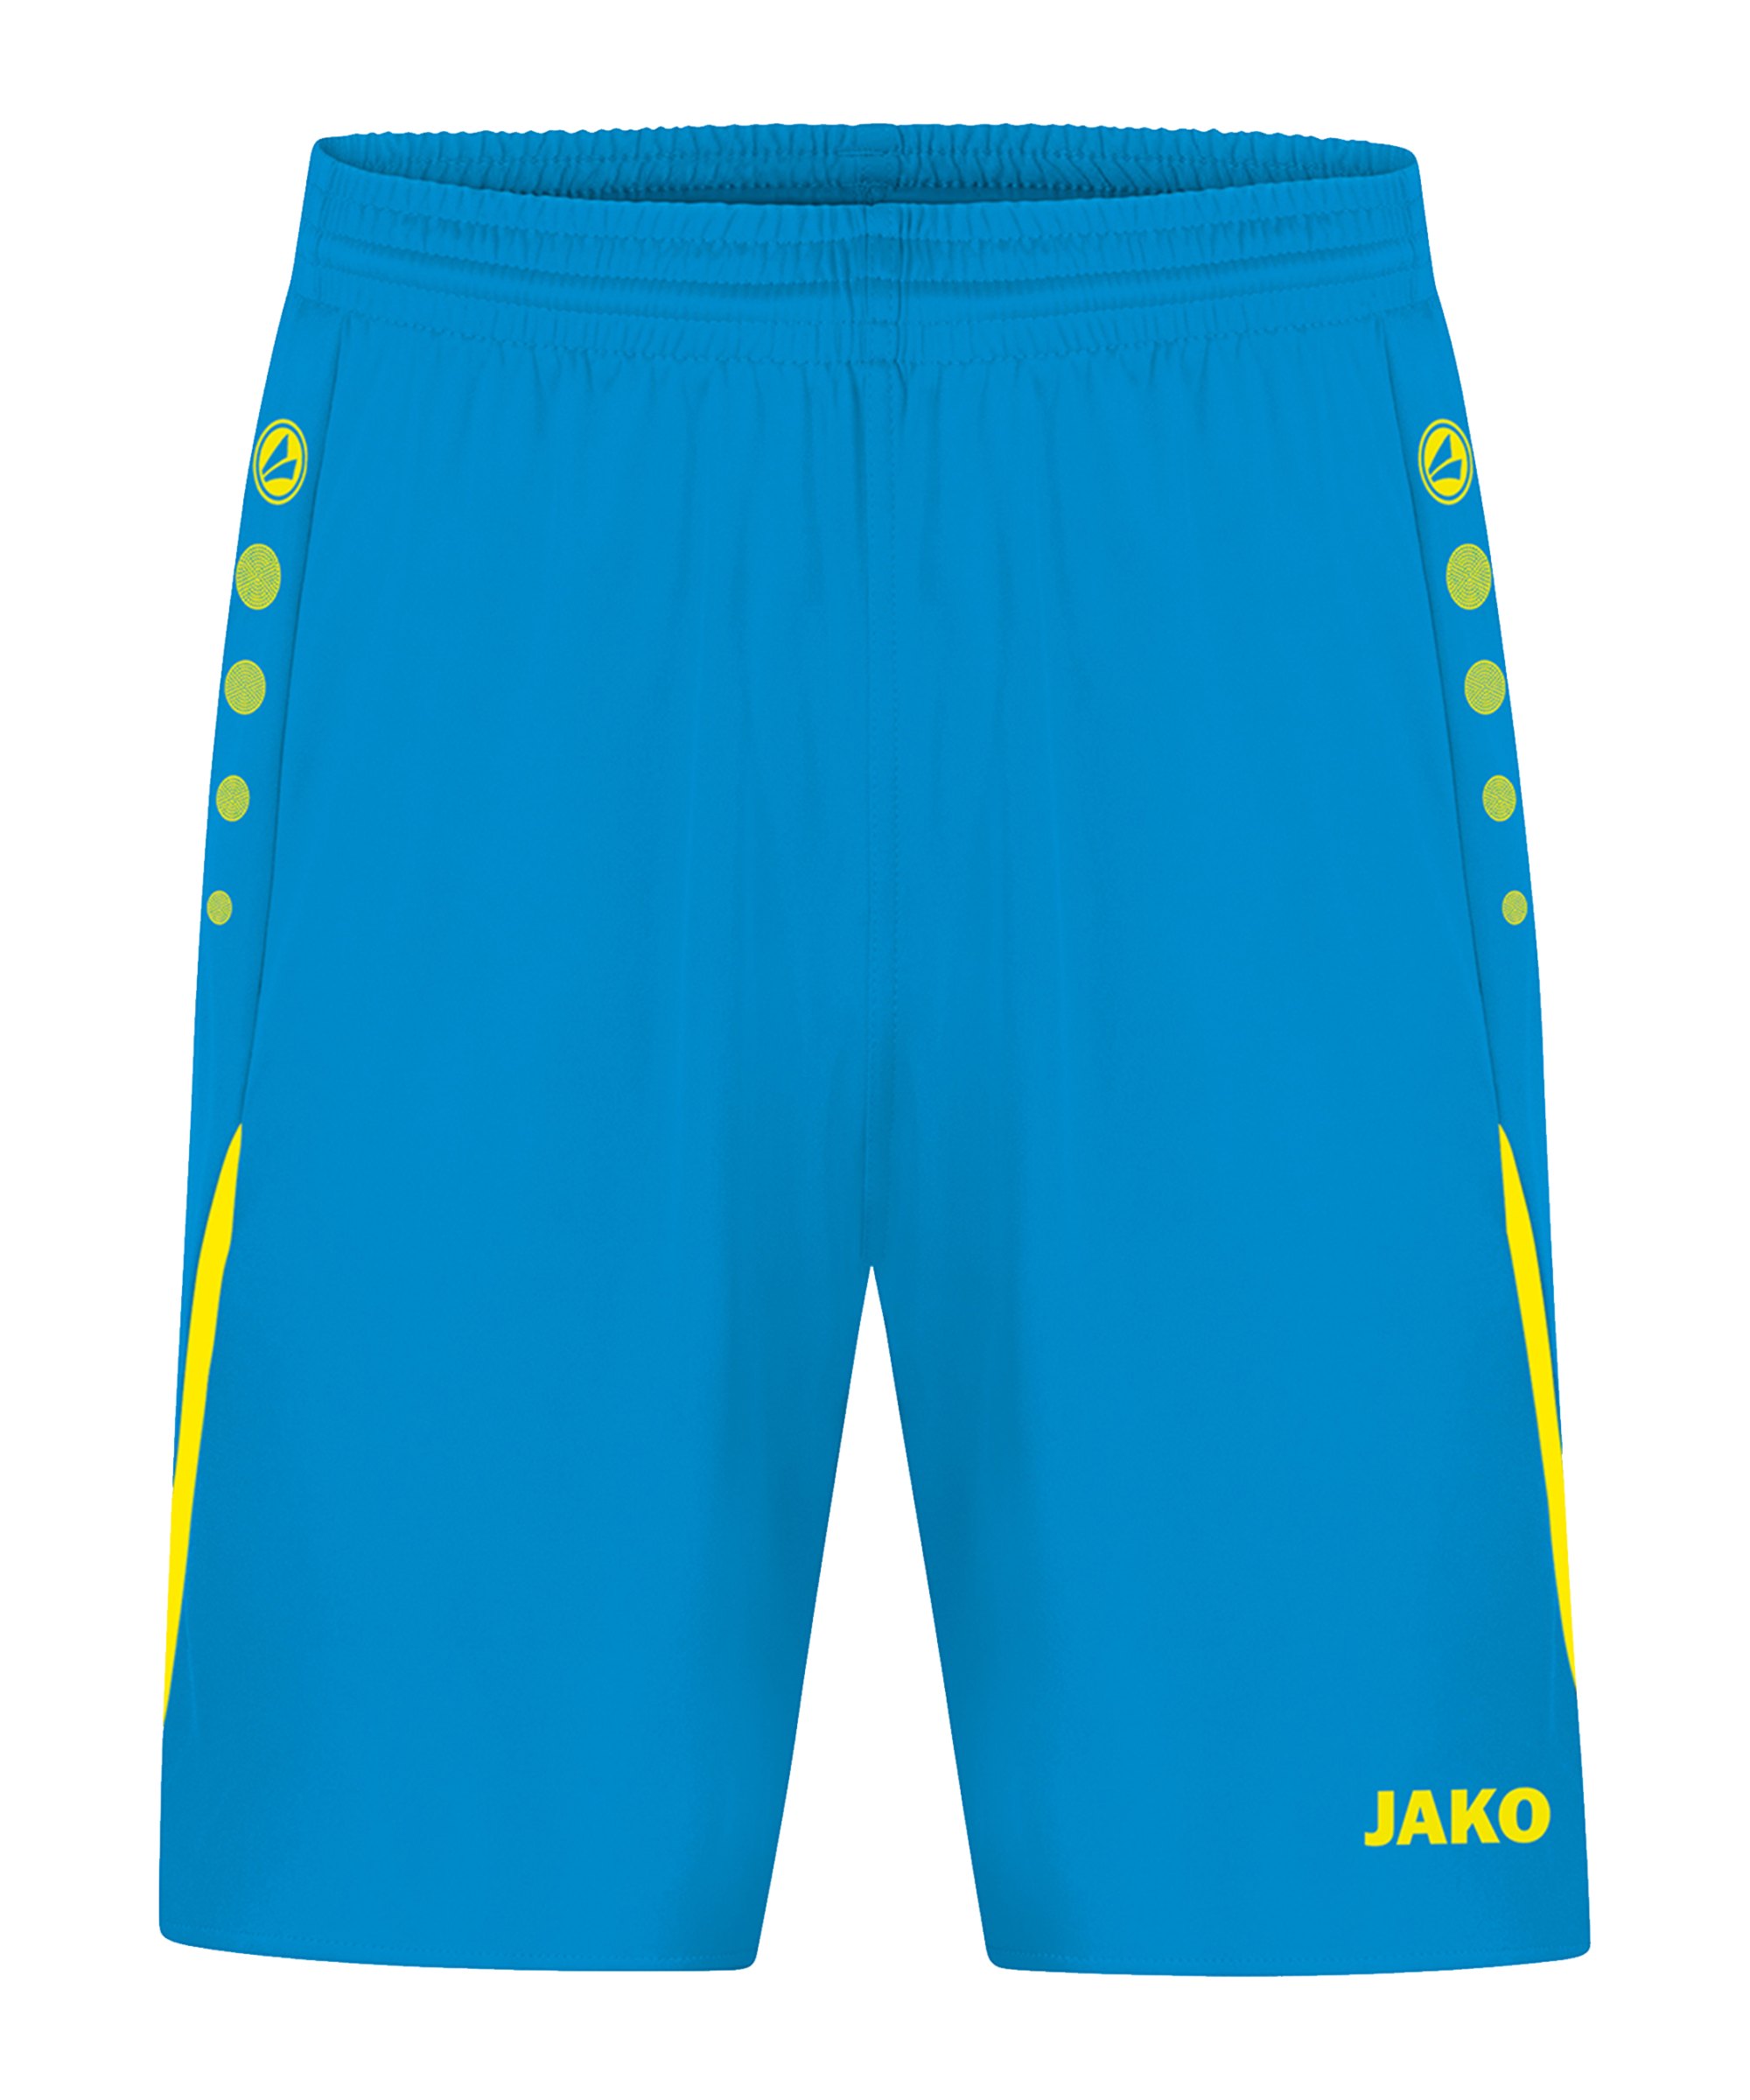 JAKO Challenge Short Damen Blau Gelb F443 - blau